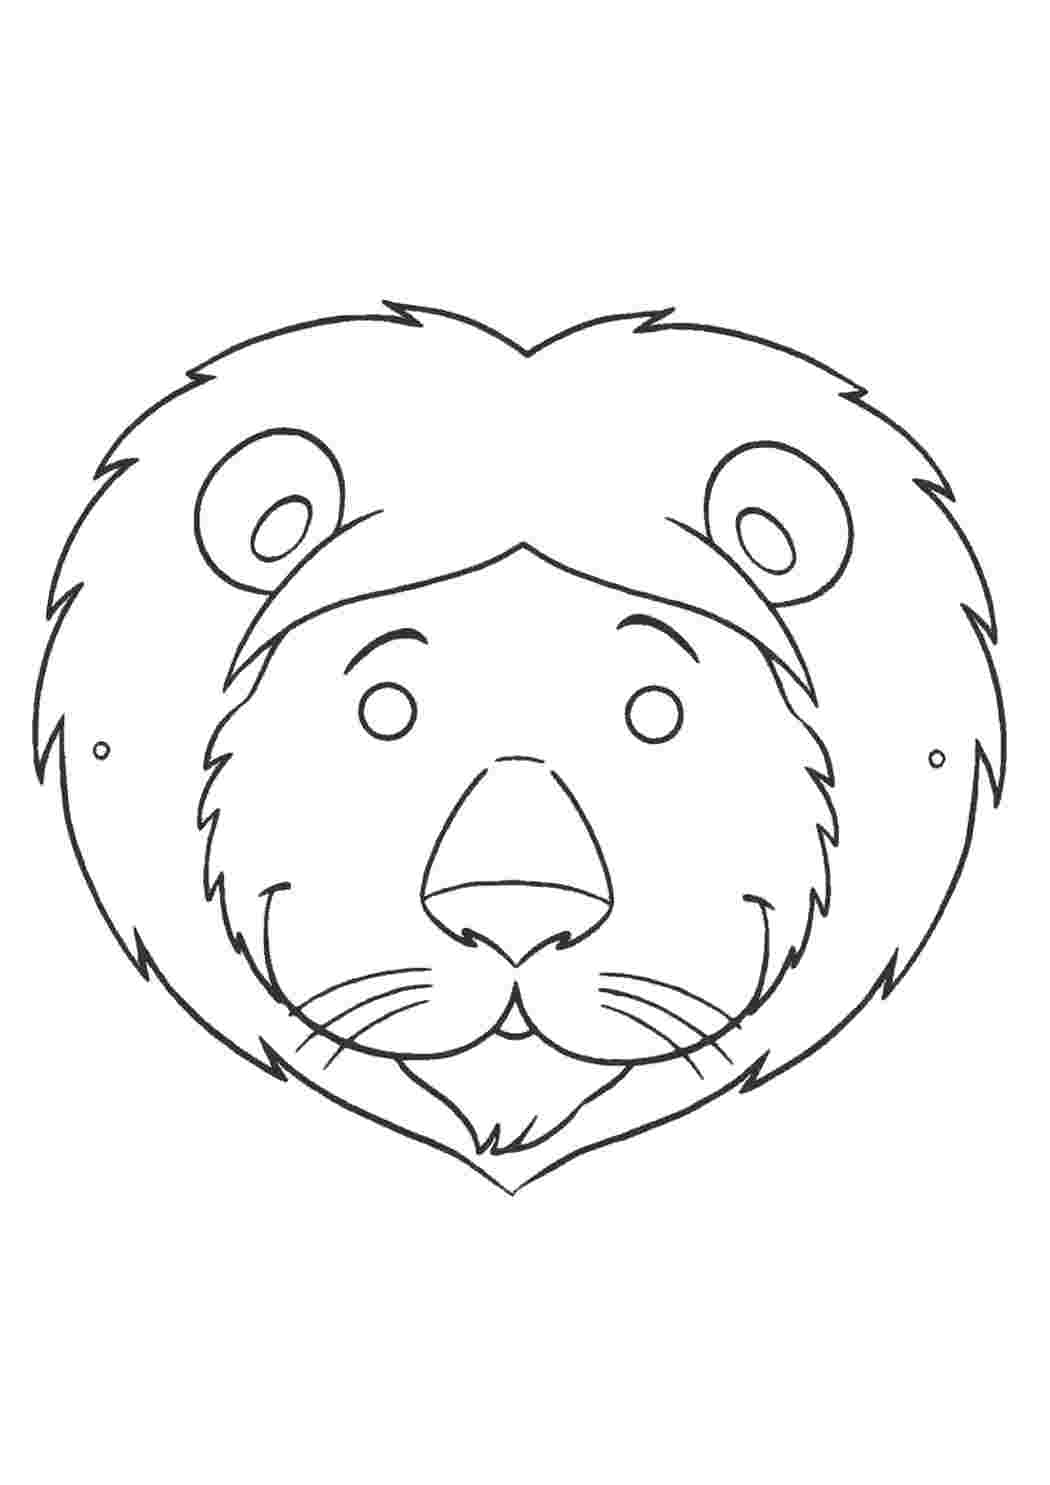 Мордочки львенка на голову: инструкции и шаблоны для распечатки